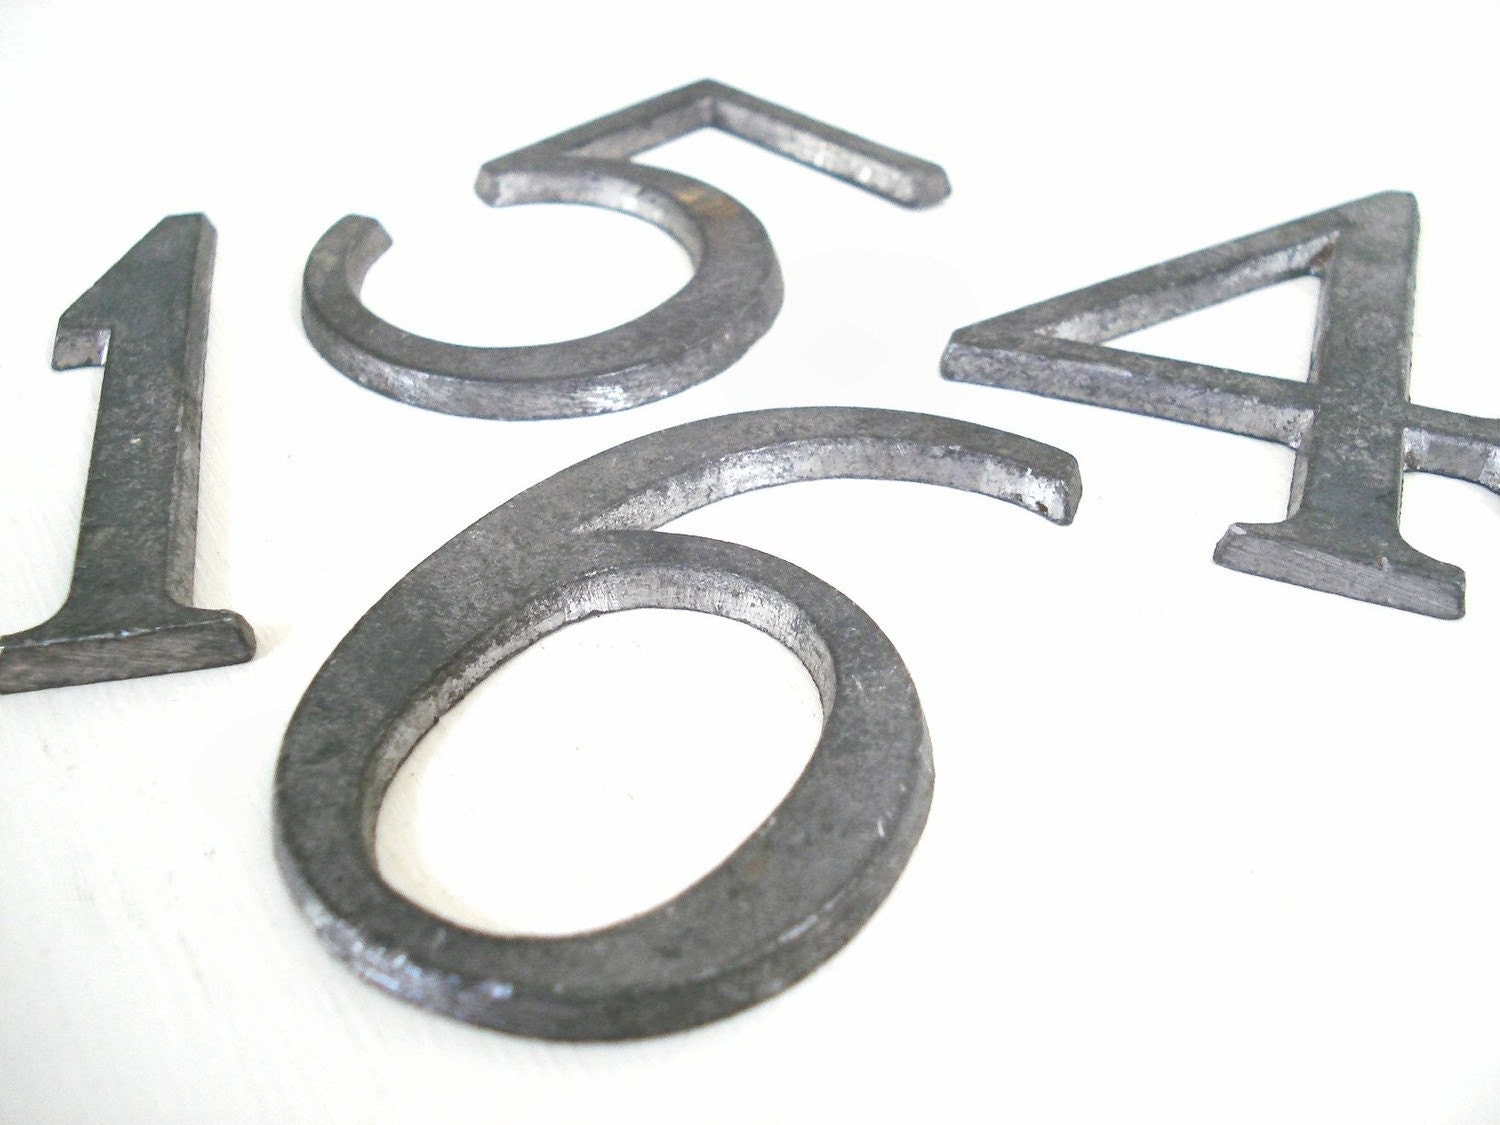 One vintage metal number